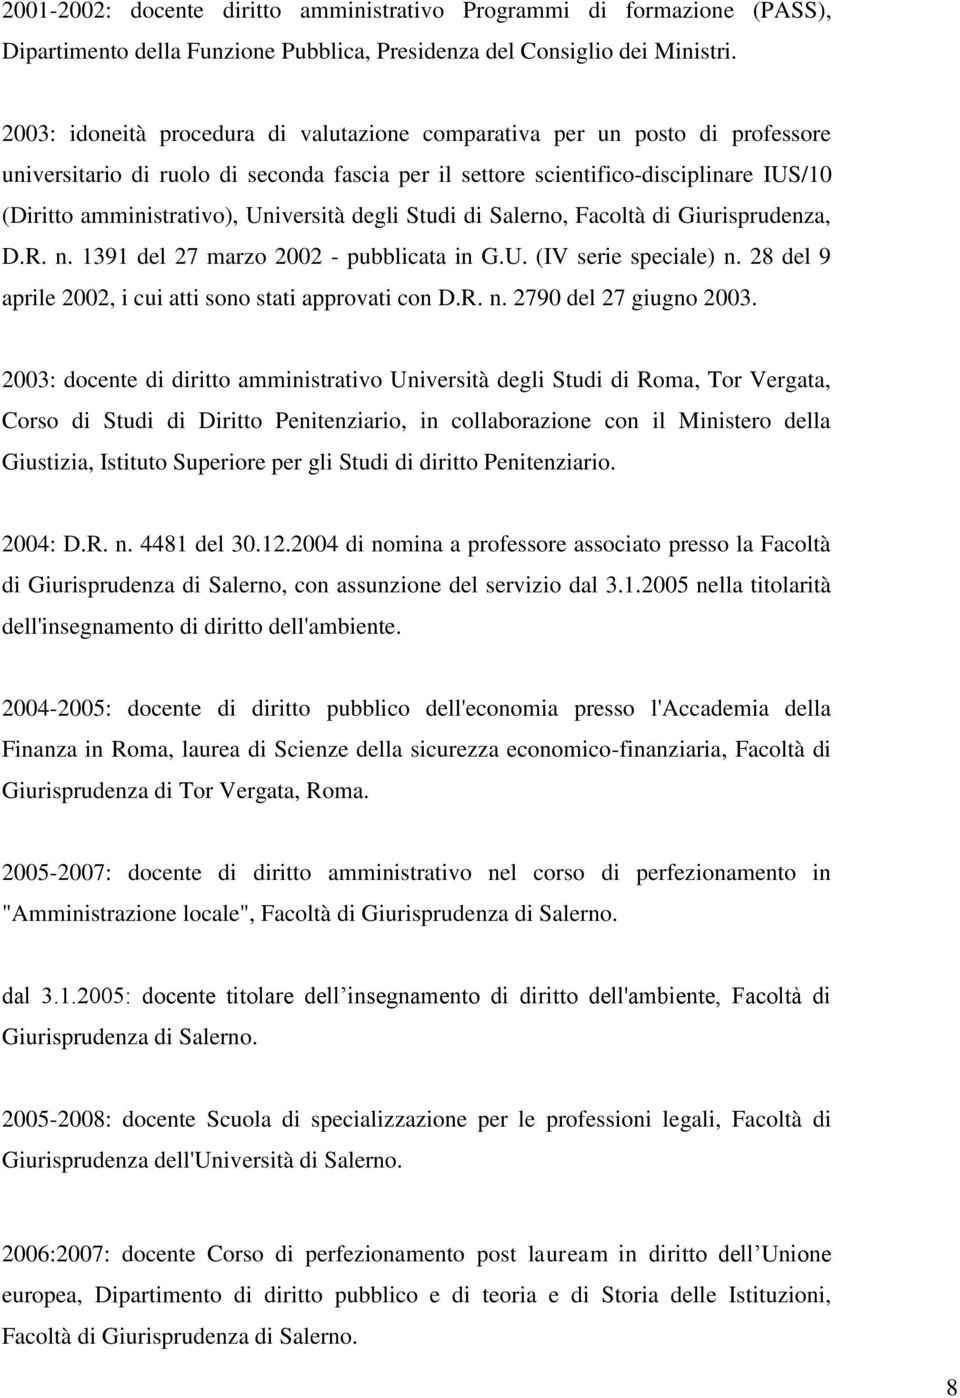 Università degli Studi di Salerno, Facoltà di Giurisprudenza, D.R. n. 1391 del 27 marzo 2002 - pubblicata in G.U. (IV serie speciale) n. 28 del 9 aprile 2002, i cui atti sono stati approvati con D.R. n. 2790 del 27 giugno 2003.